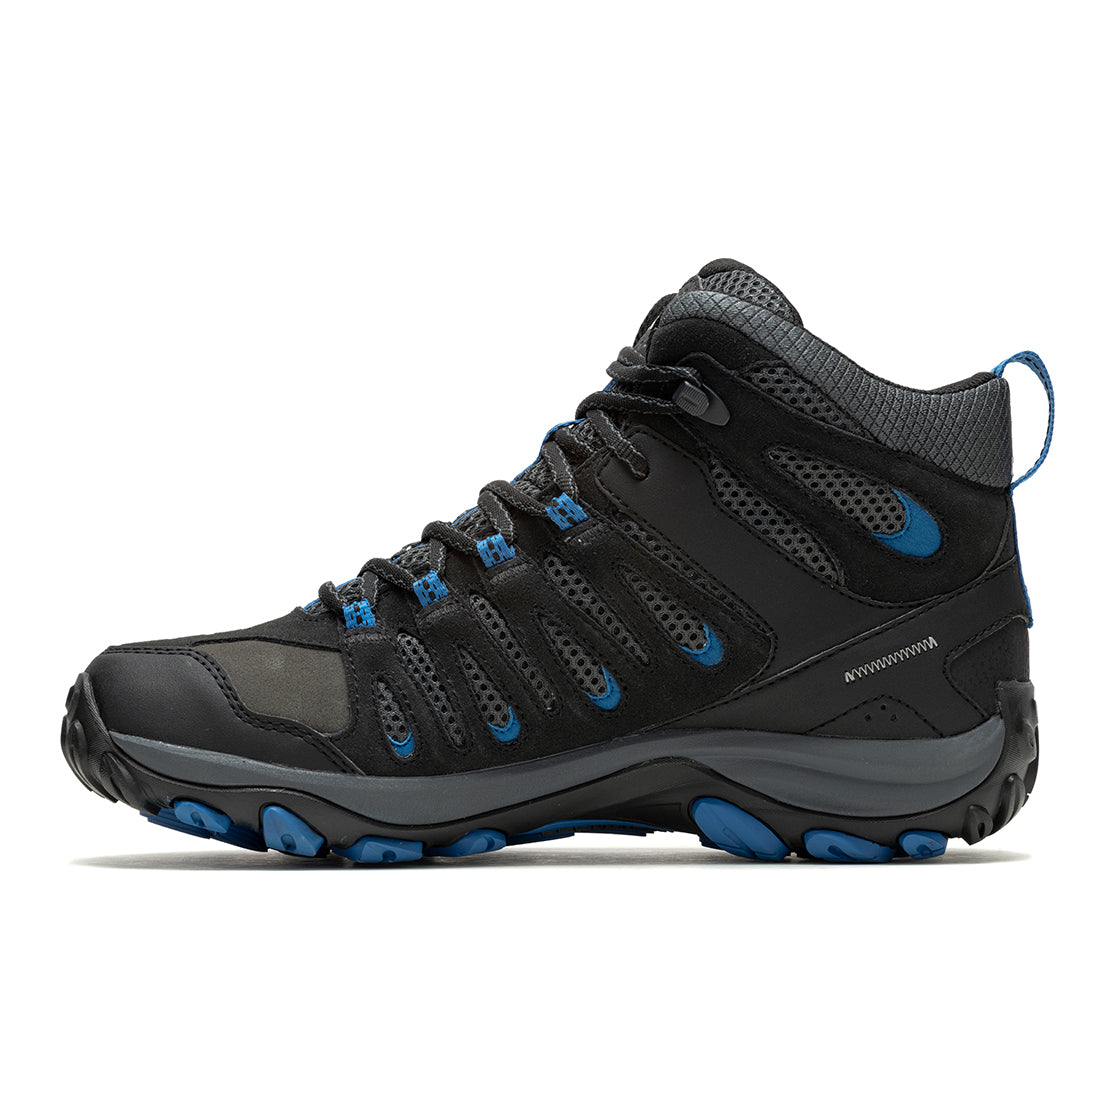 Crosslander 3 Mid Wprf - Black/Blue Mens Hiking Shoes - 0